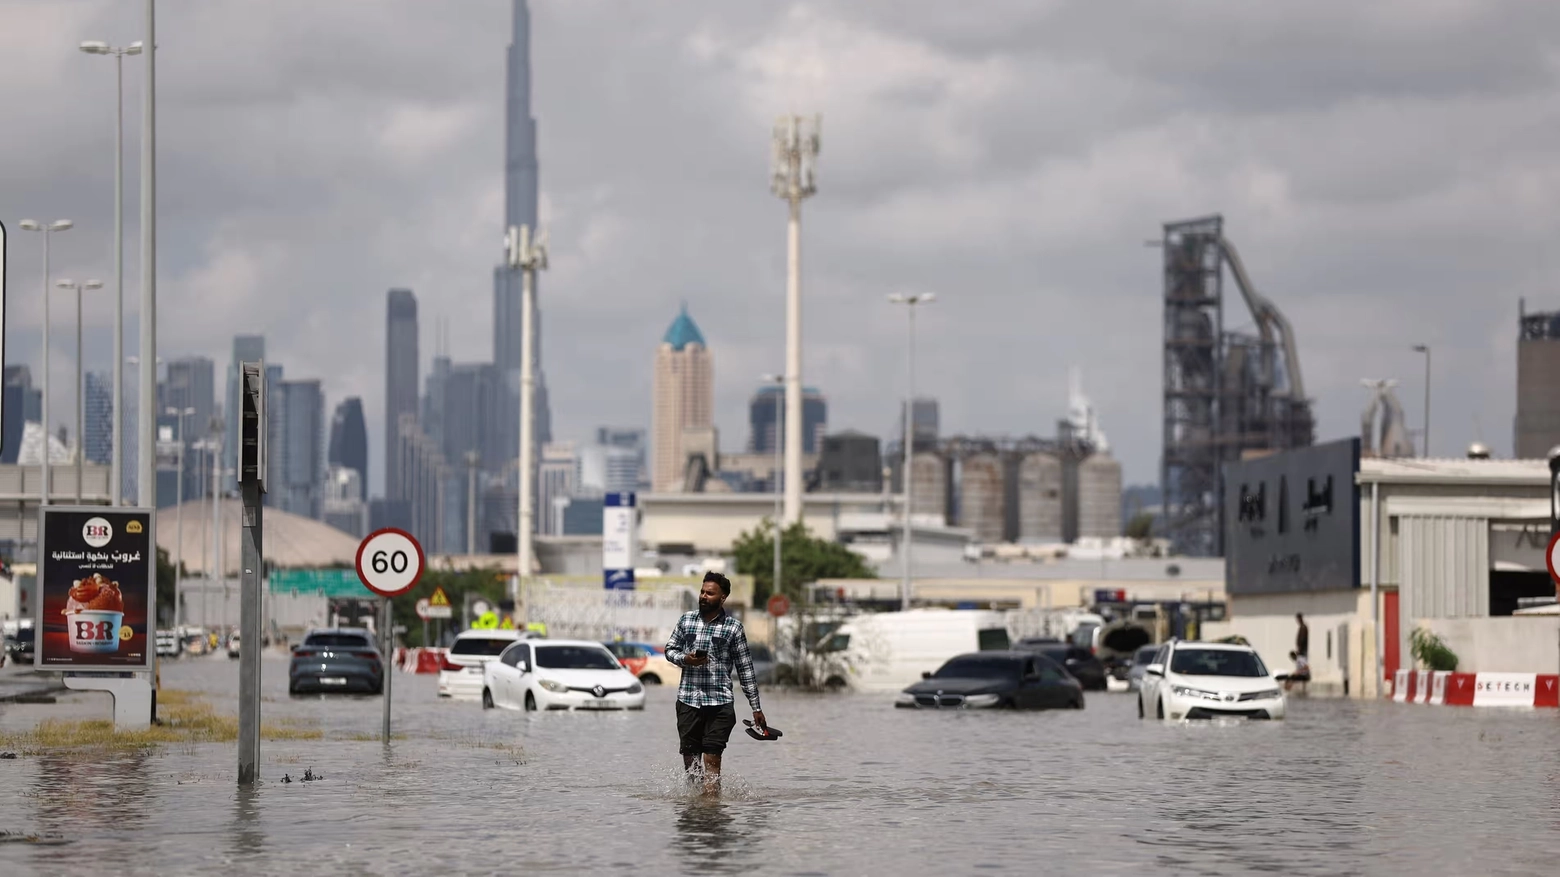 Le piogge torrenziali del 16 aprile nella città emiratina hanno causato 18 morti e danni ingenti alle infrastrutture: colpa della tecnica di ‘semina’ delle nuvole? Ecco perché gli esperti dicono di no